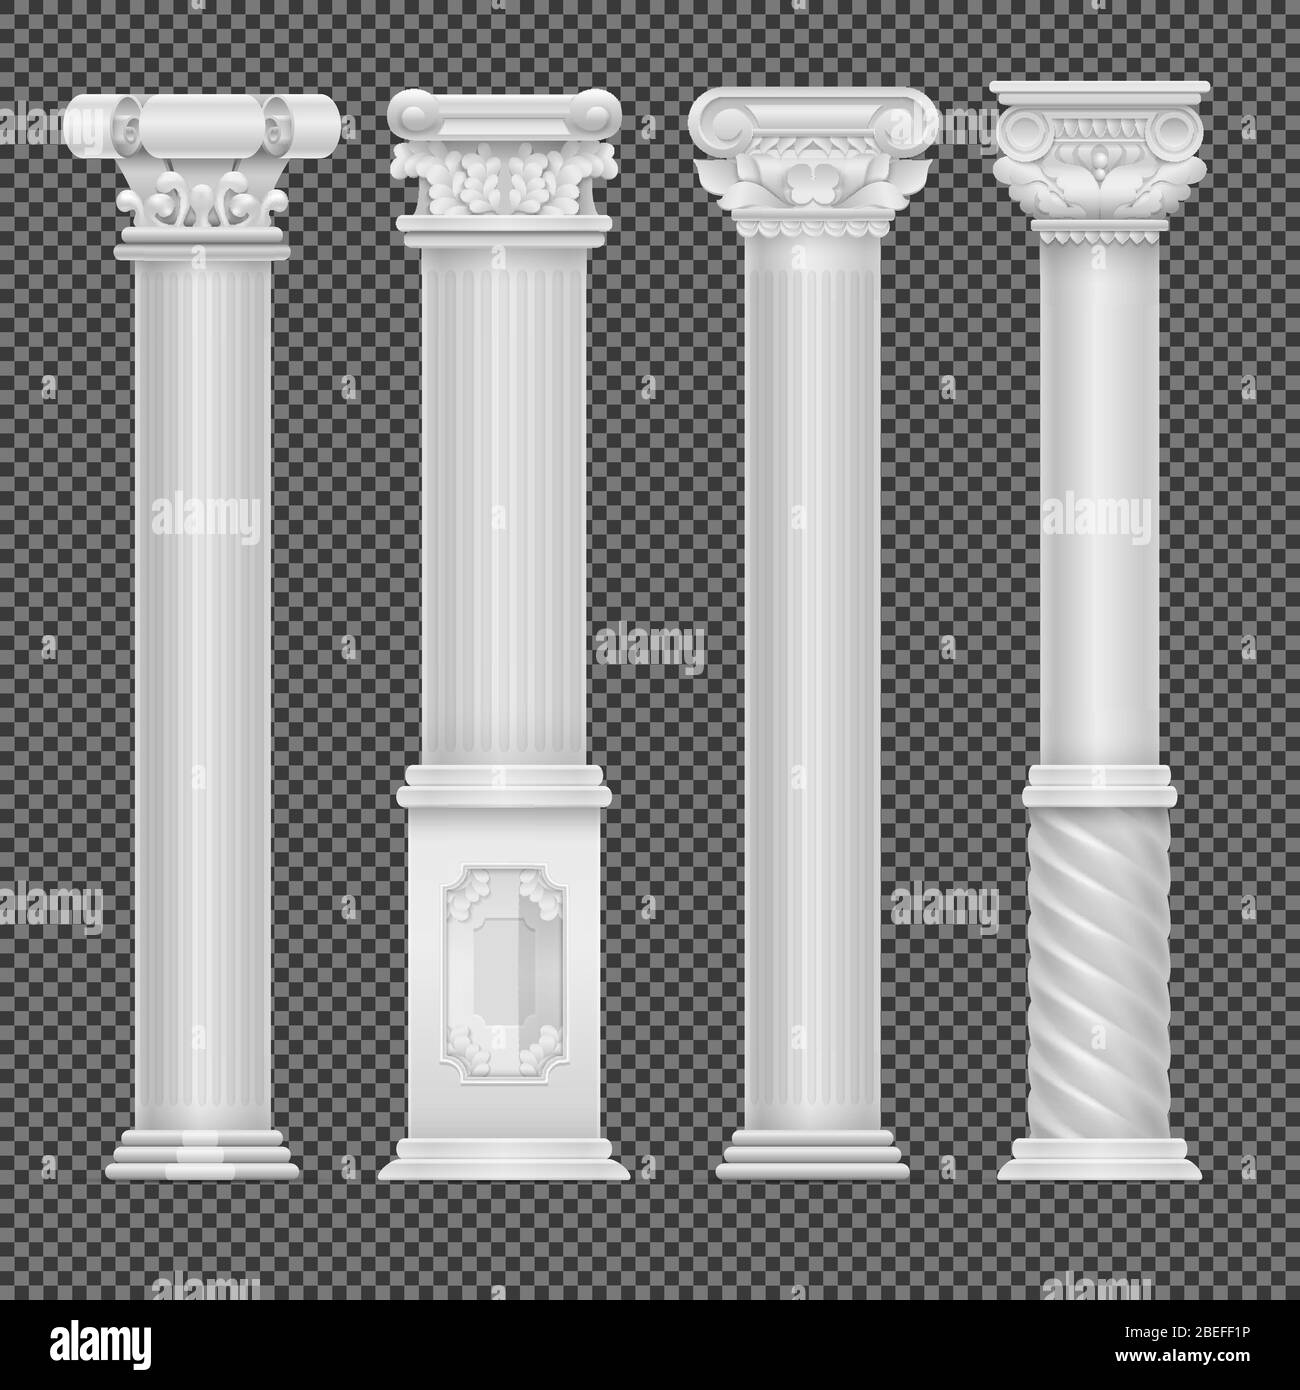 Colonne romaine antique blanche réaliste isolée sur fond transparent. Colonne et pilier classique, illustration vectorielle Illustration de Vecteur